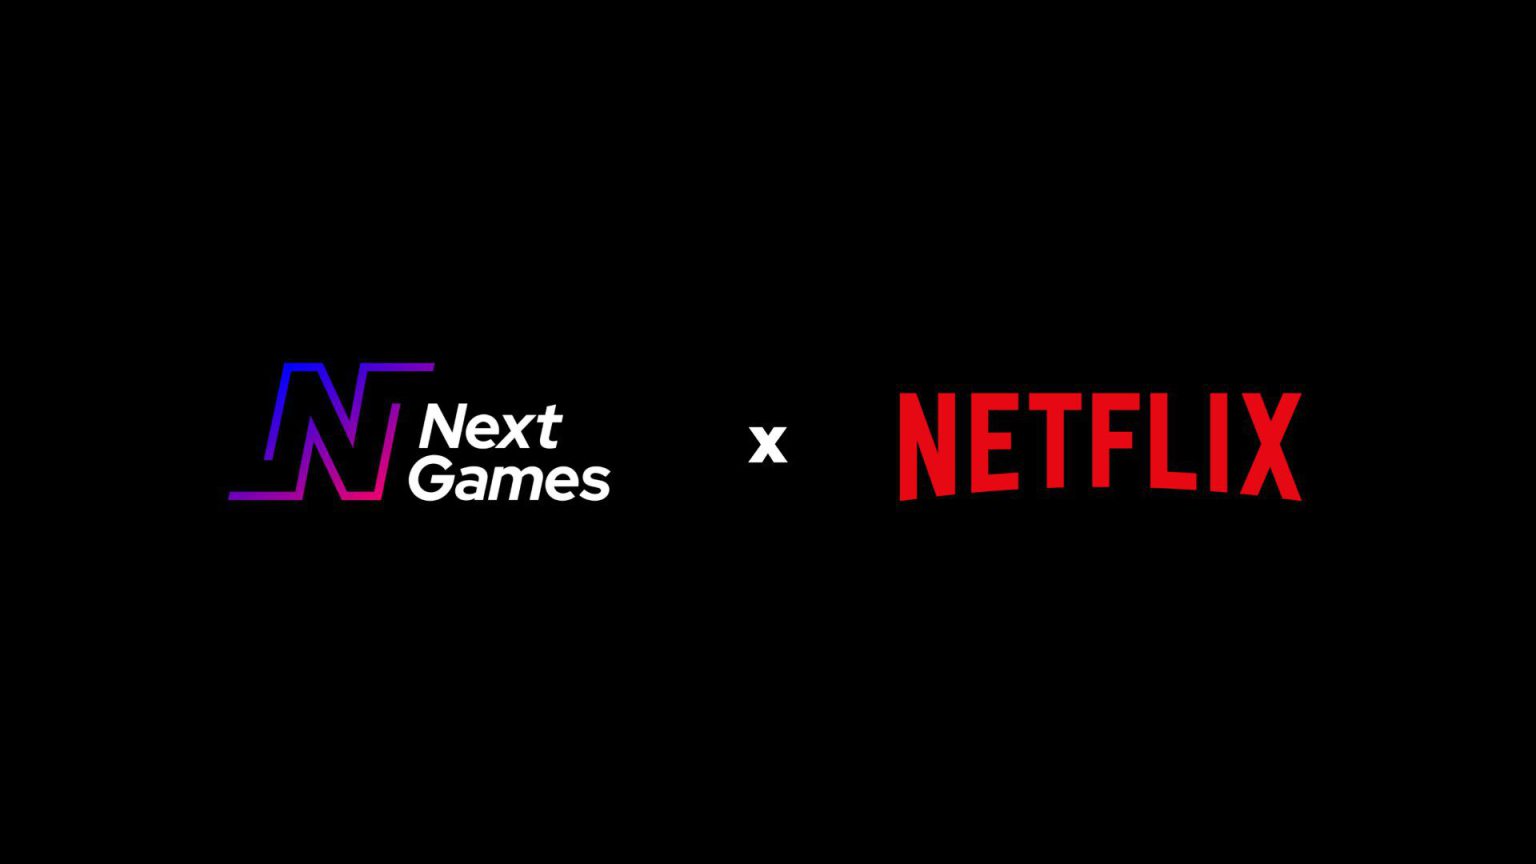 Netflix - Next Games